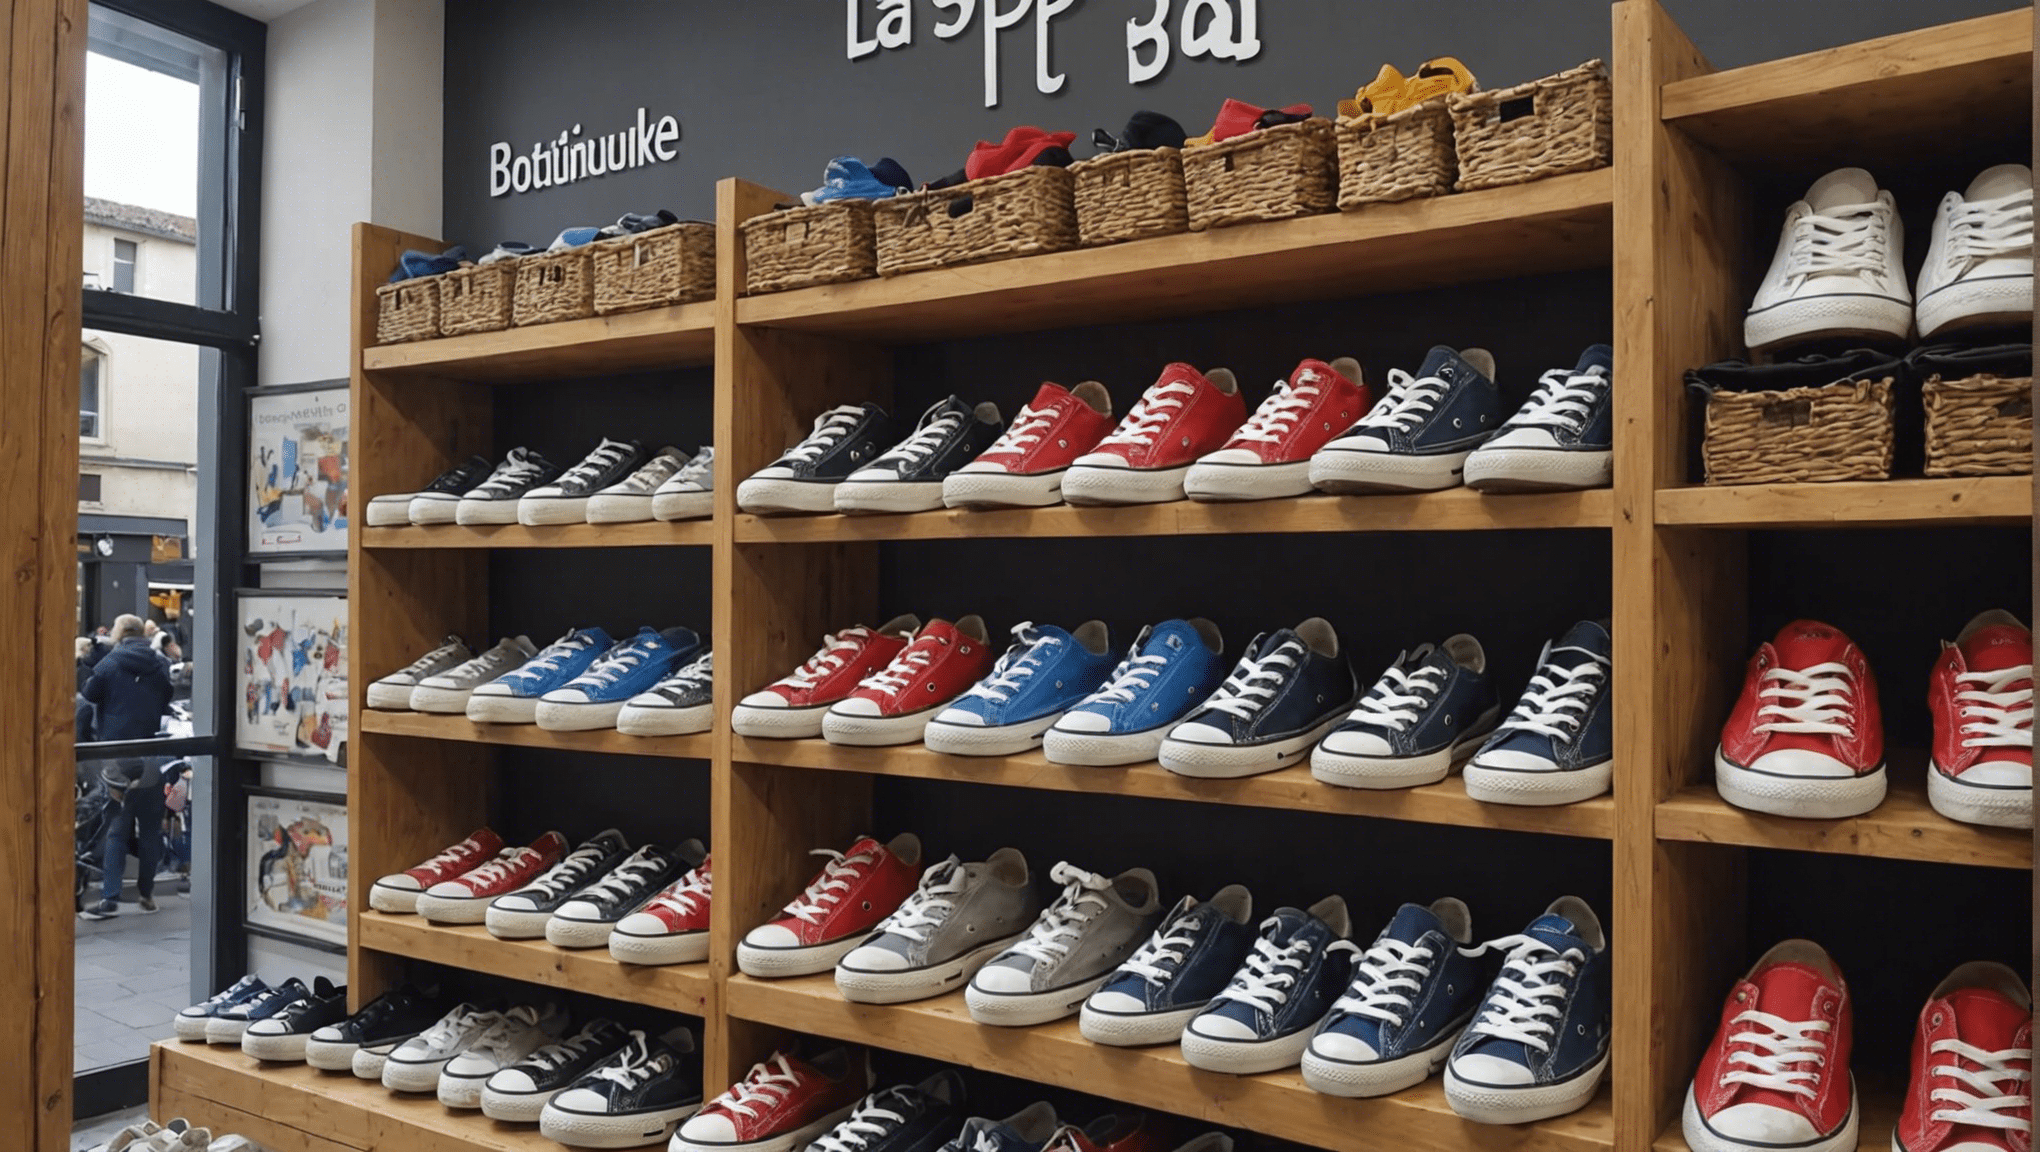 trouvez les baskets de vos rêves dans cette boutique incroyable à périgueux ! découvrez une sélection variée et tendance qui saura satisfaire tous les passionnés de chaussures.